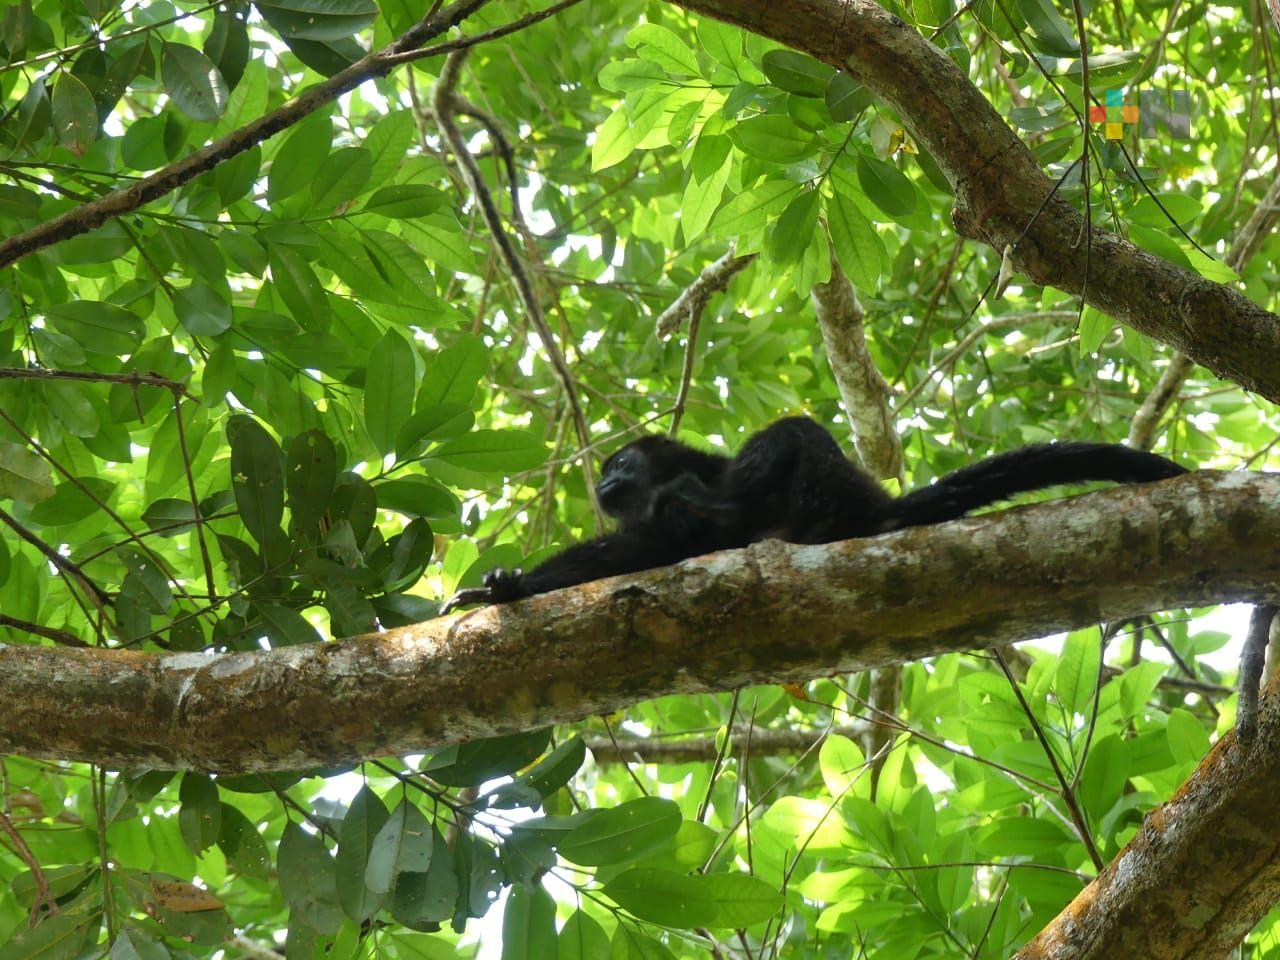 Liberan mono araña en hábitat tras recibir descarga eléctrica en Ixhuatlán del Sureste